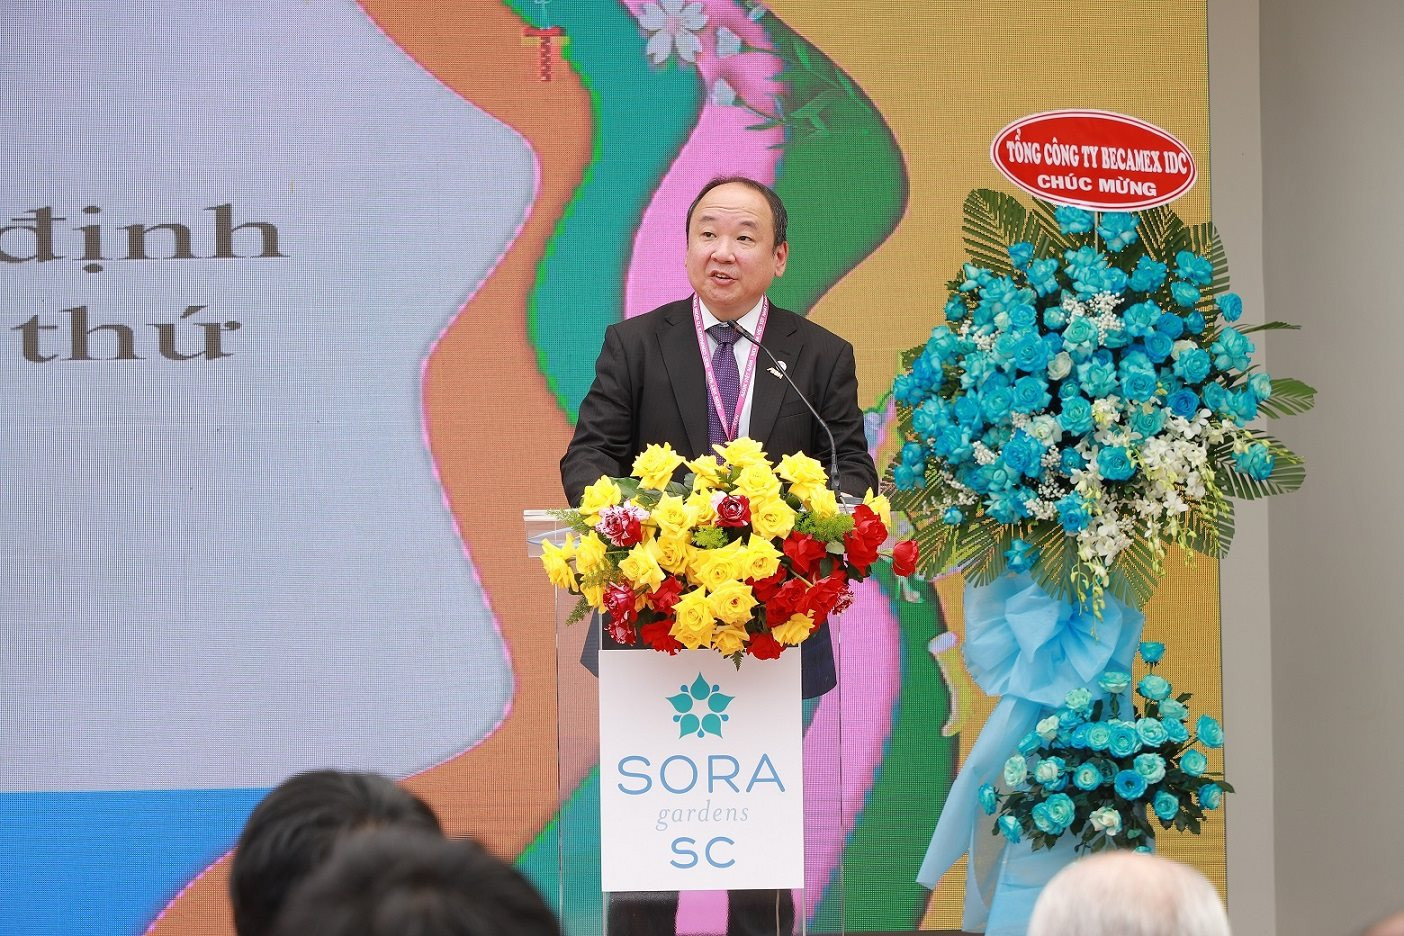 “Cơn sốt” siêu thị, đại siêu thị tại Việt Nam: AEON khai trương siêu thị 5.000m2 tại SORA Gardens SC, Lotte “nhá hàng” tổ hợp lớn chưa từng có và Vincom, Thaco… cũng nhập cuộc - Ảnh 2.